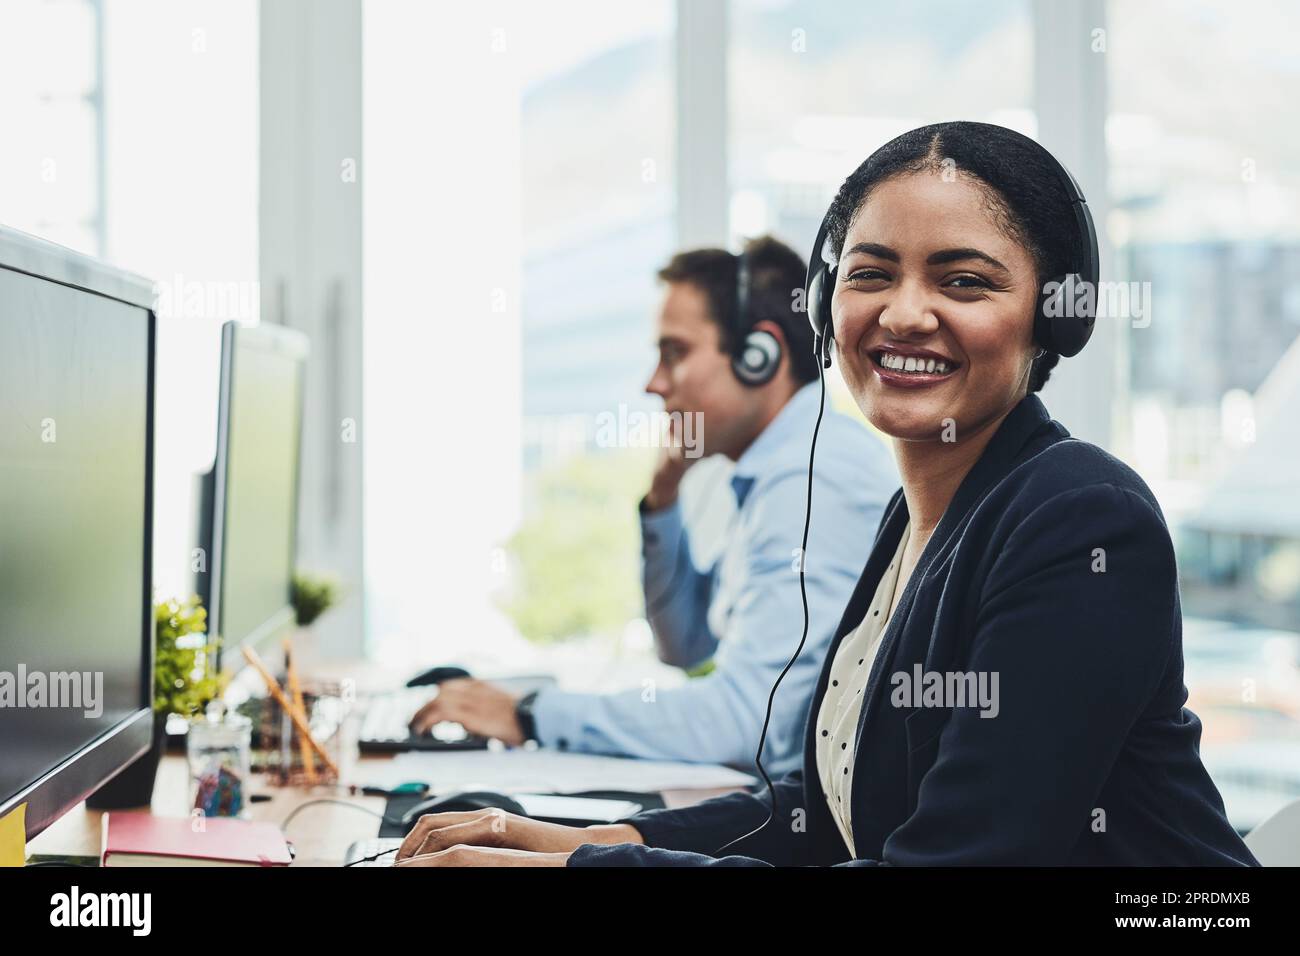 Porträt eines zufriedenen Callcenter-Agenten, der in einem geschäftigen Büro arbeitet, Kunden unterstützt und guten Kundenservice bietet. Junge, lächelnde und fröhliche Professionelle, die bei Anrufen Unterstützung oder Hilfe anbieten Stockfoto